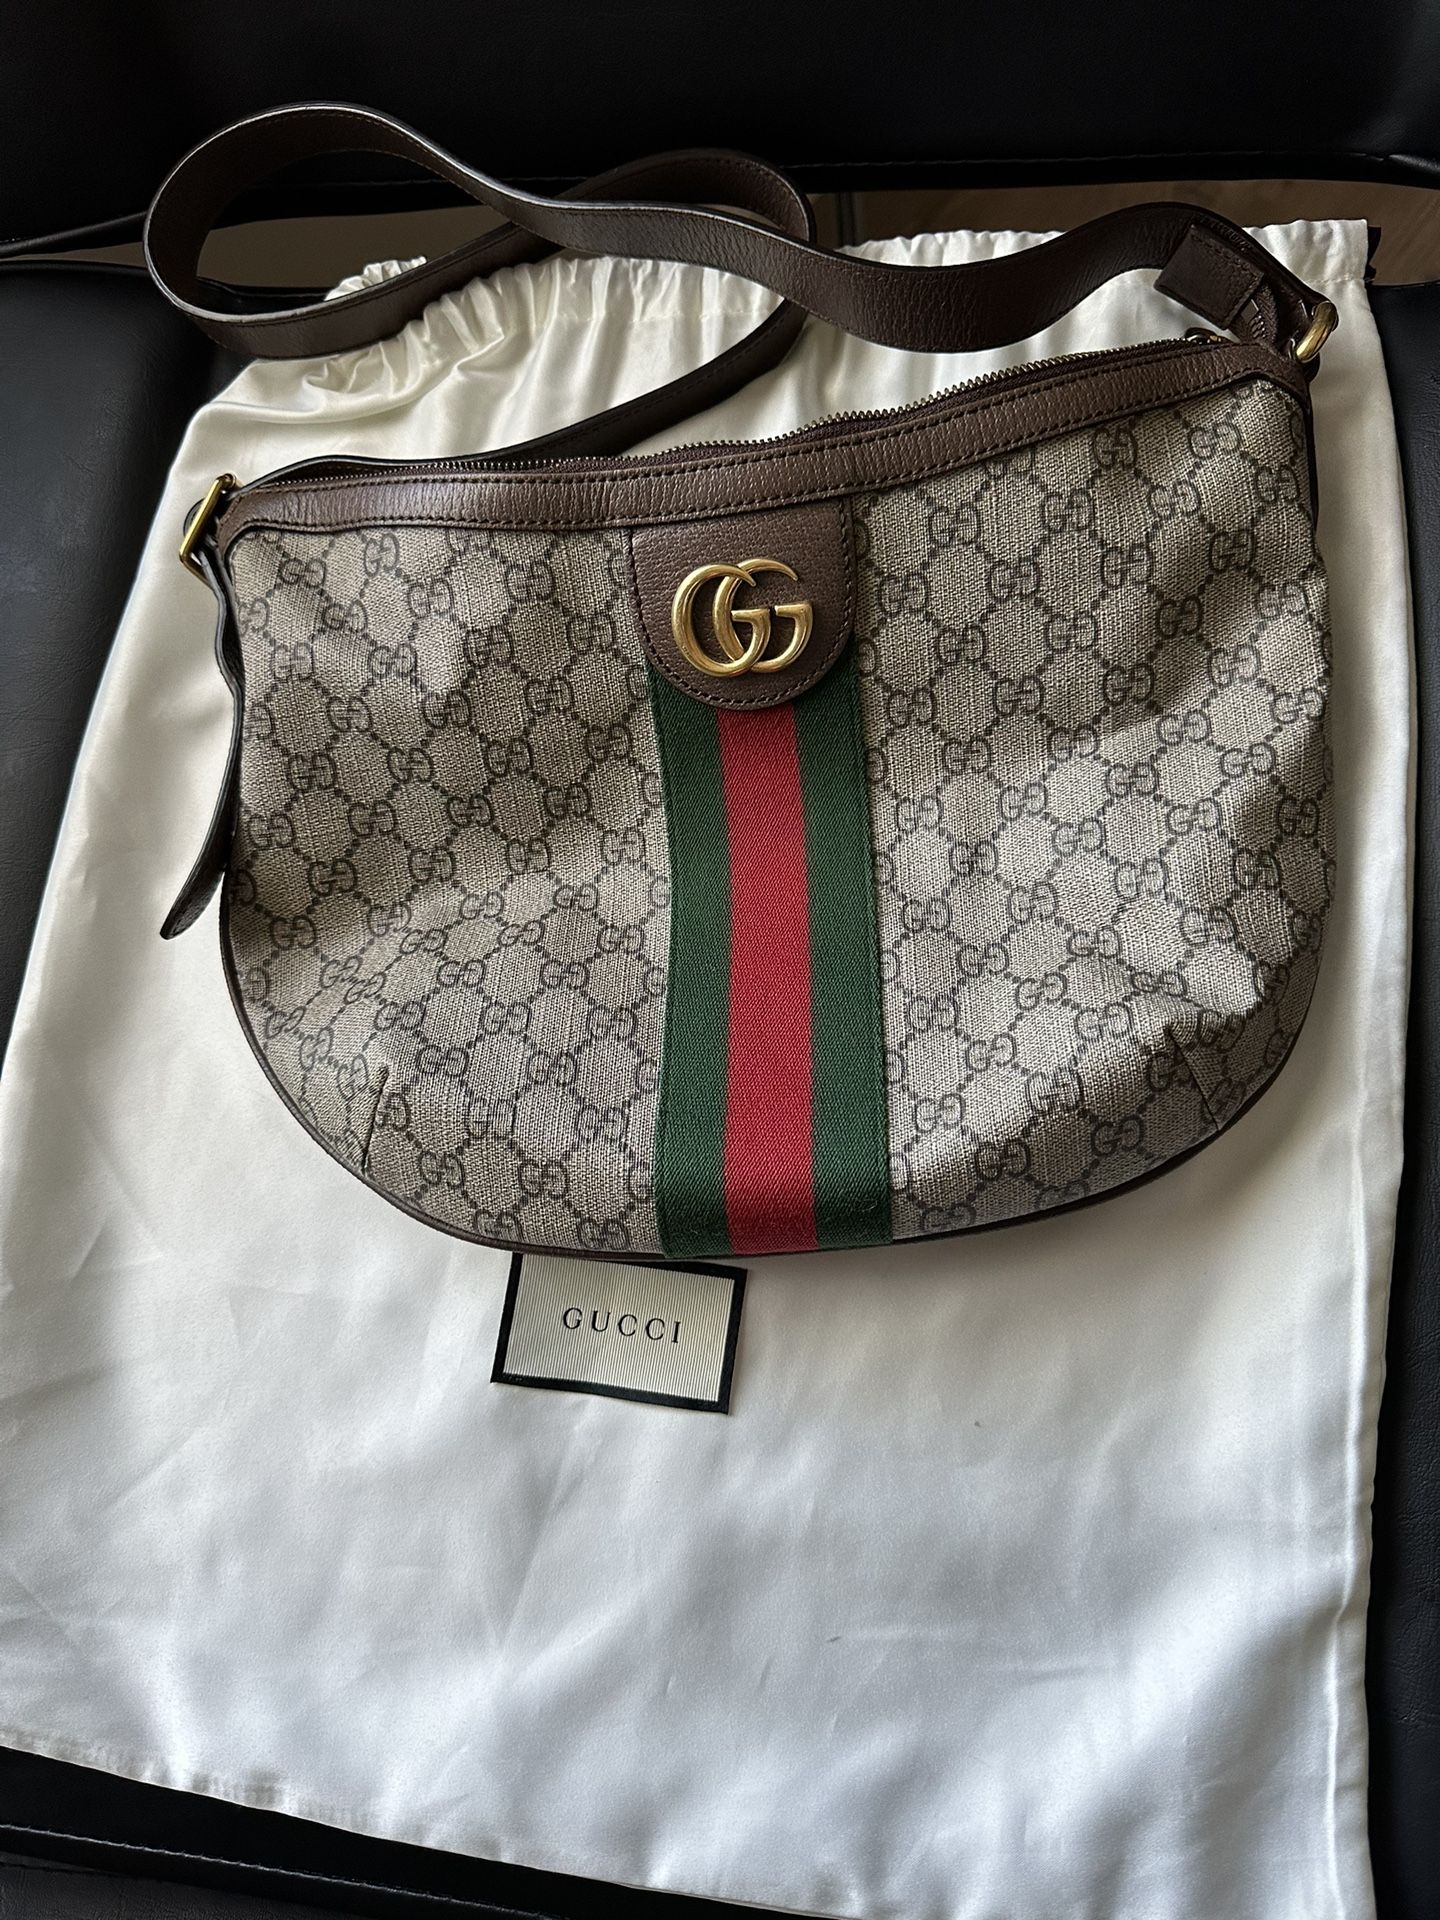 Gucci Shoulder Bag (Authentic)